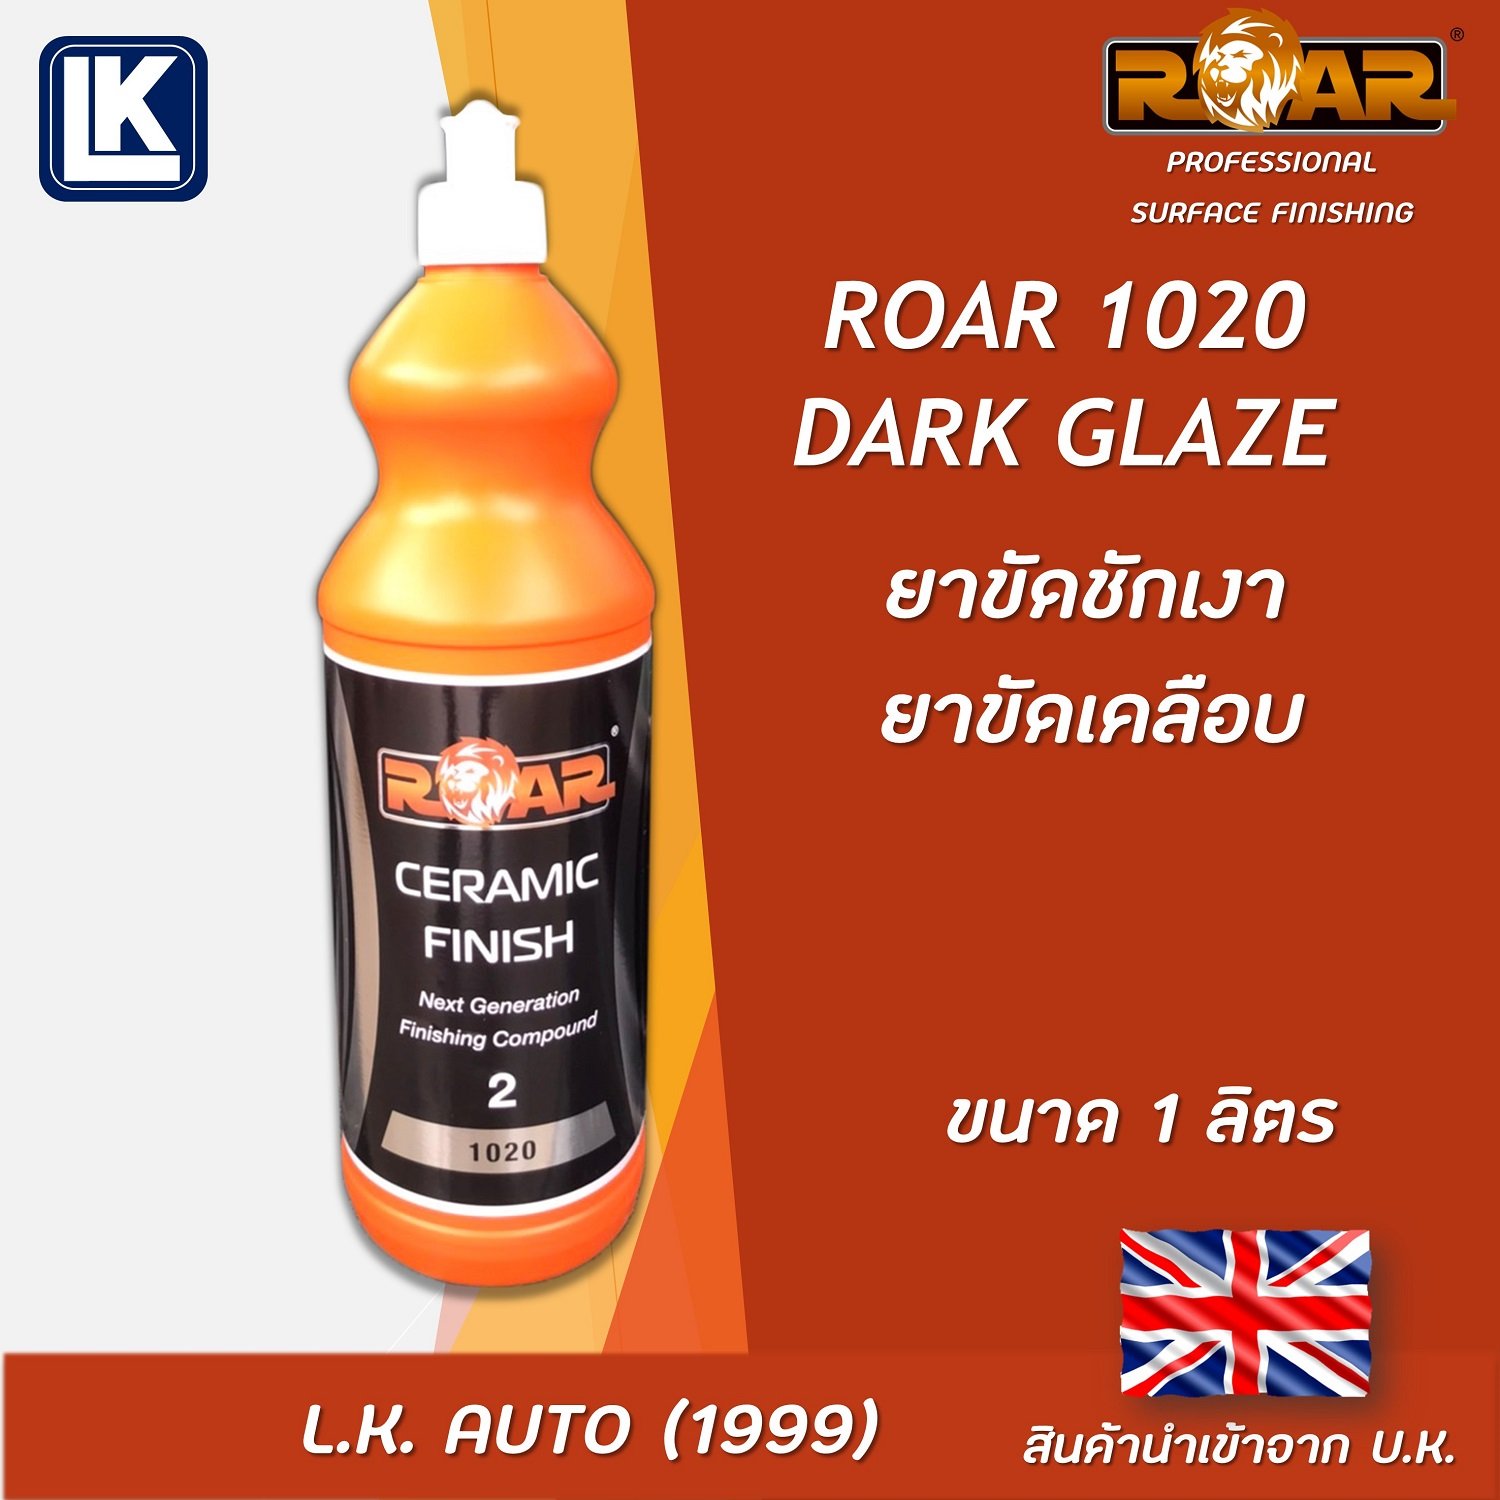 ROAR 1020 Dark Glaze